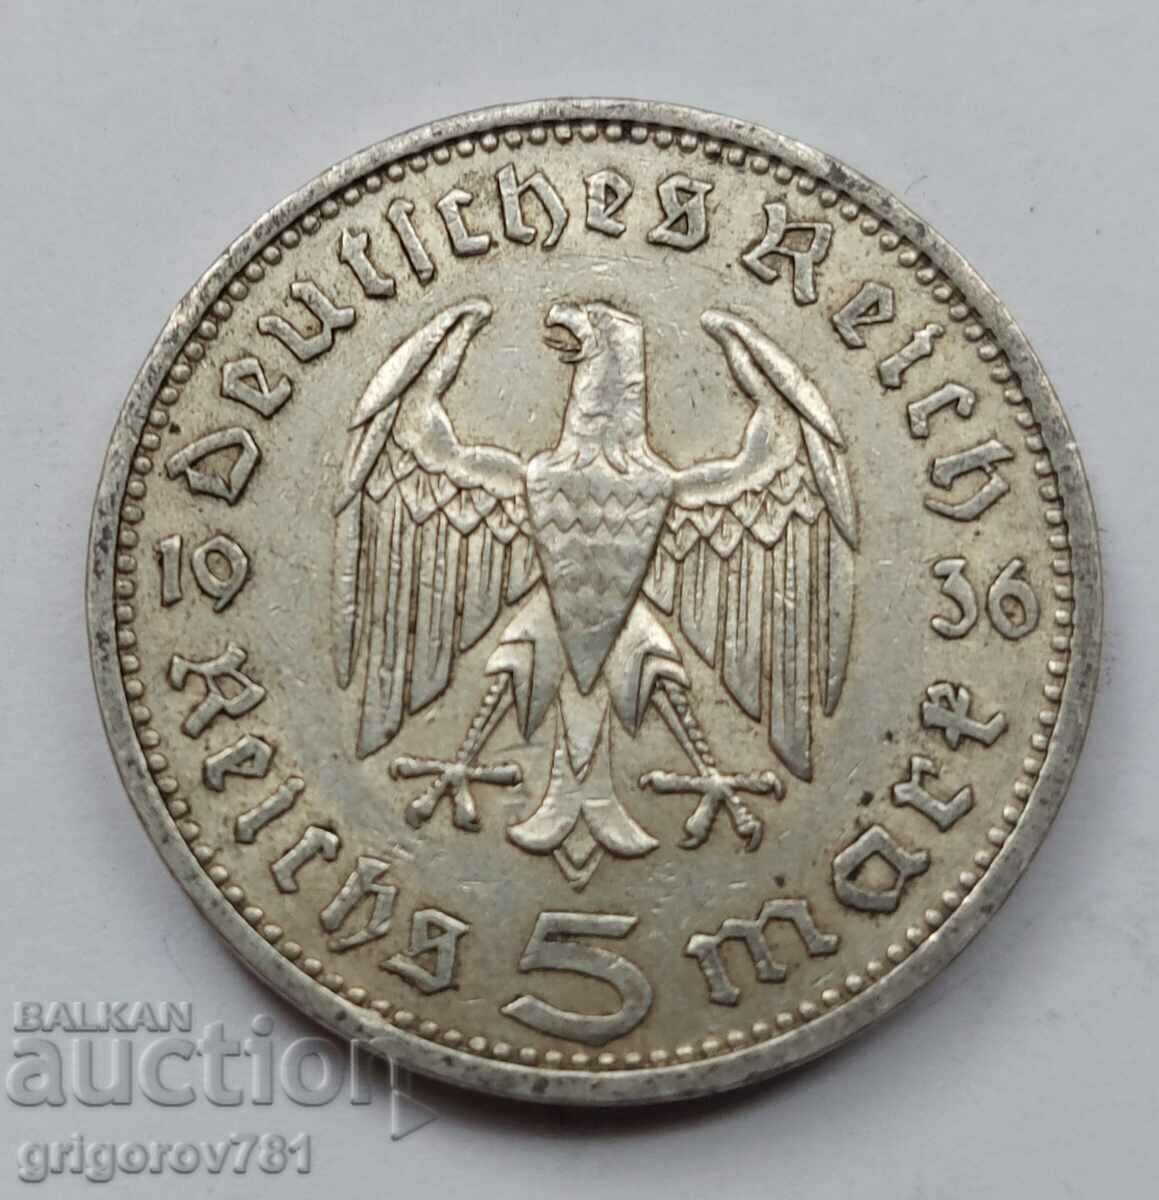 5 Mark Silver Γερμανία 1936 A III Reich Silver Coin #54